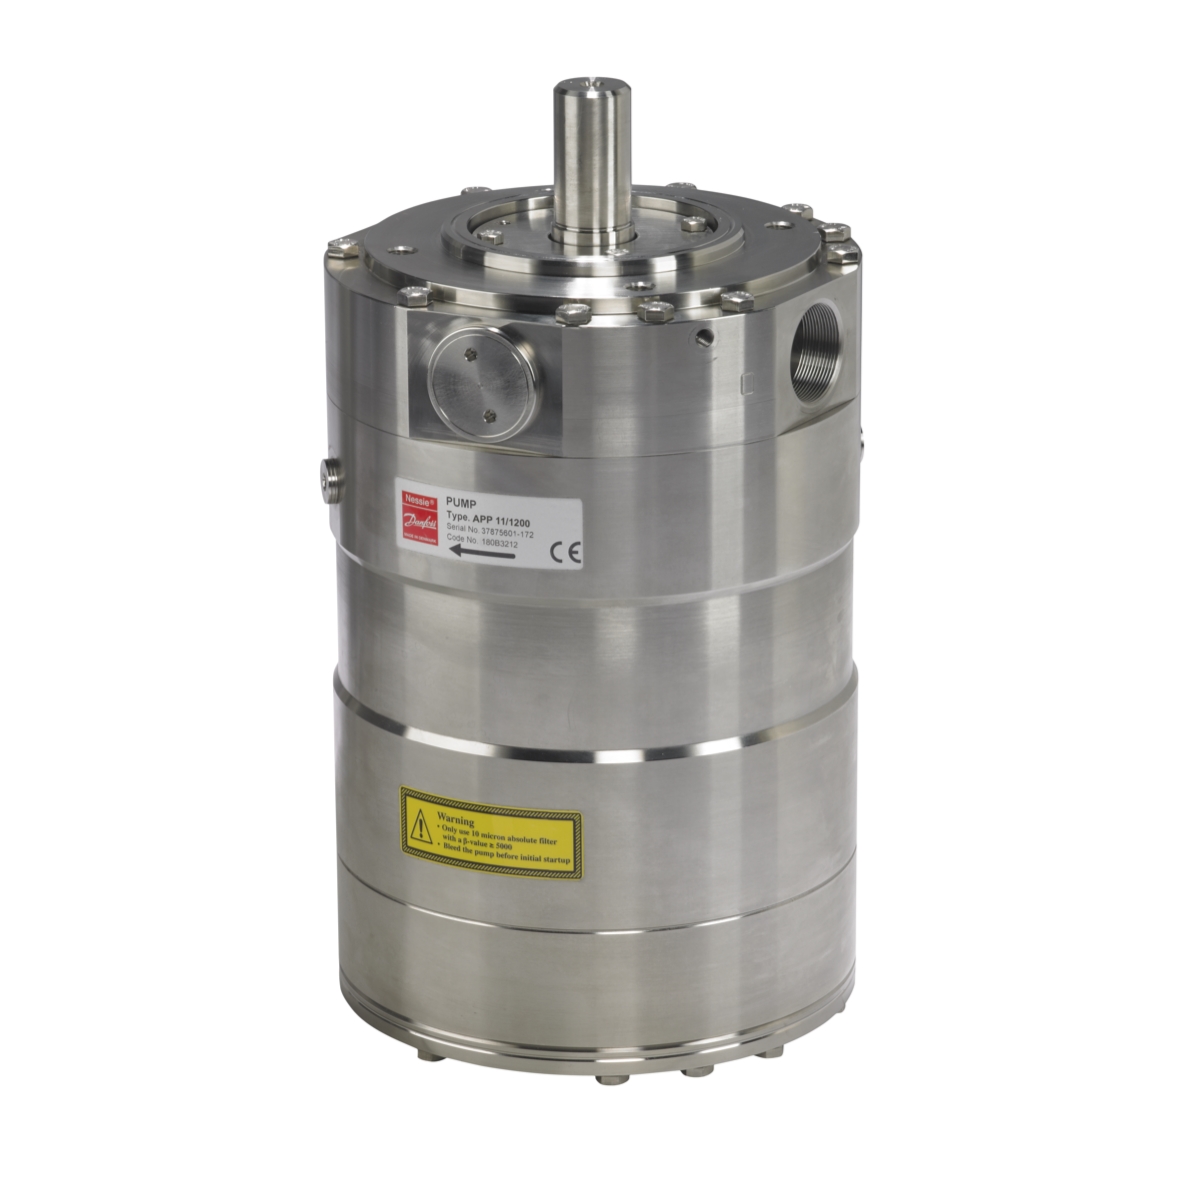 Danfoss APP 11 180B3212 Axial Piston High Pressure for salt application, such as, seawater desalination.